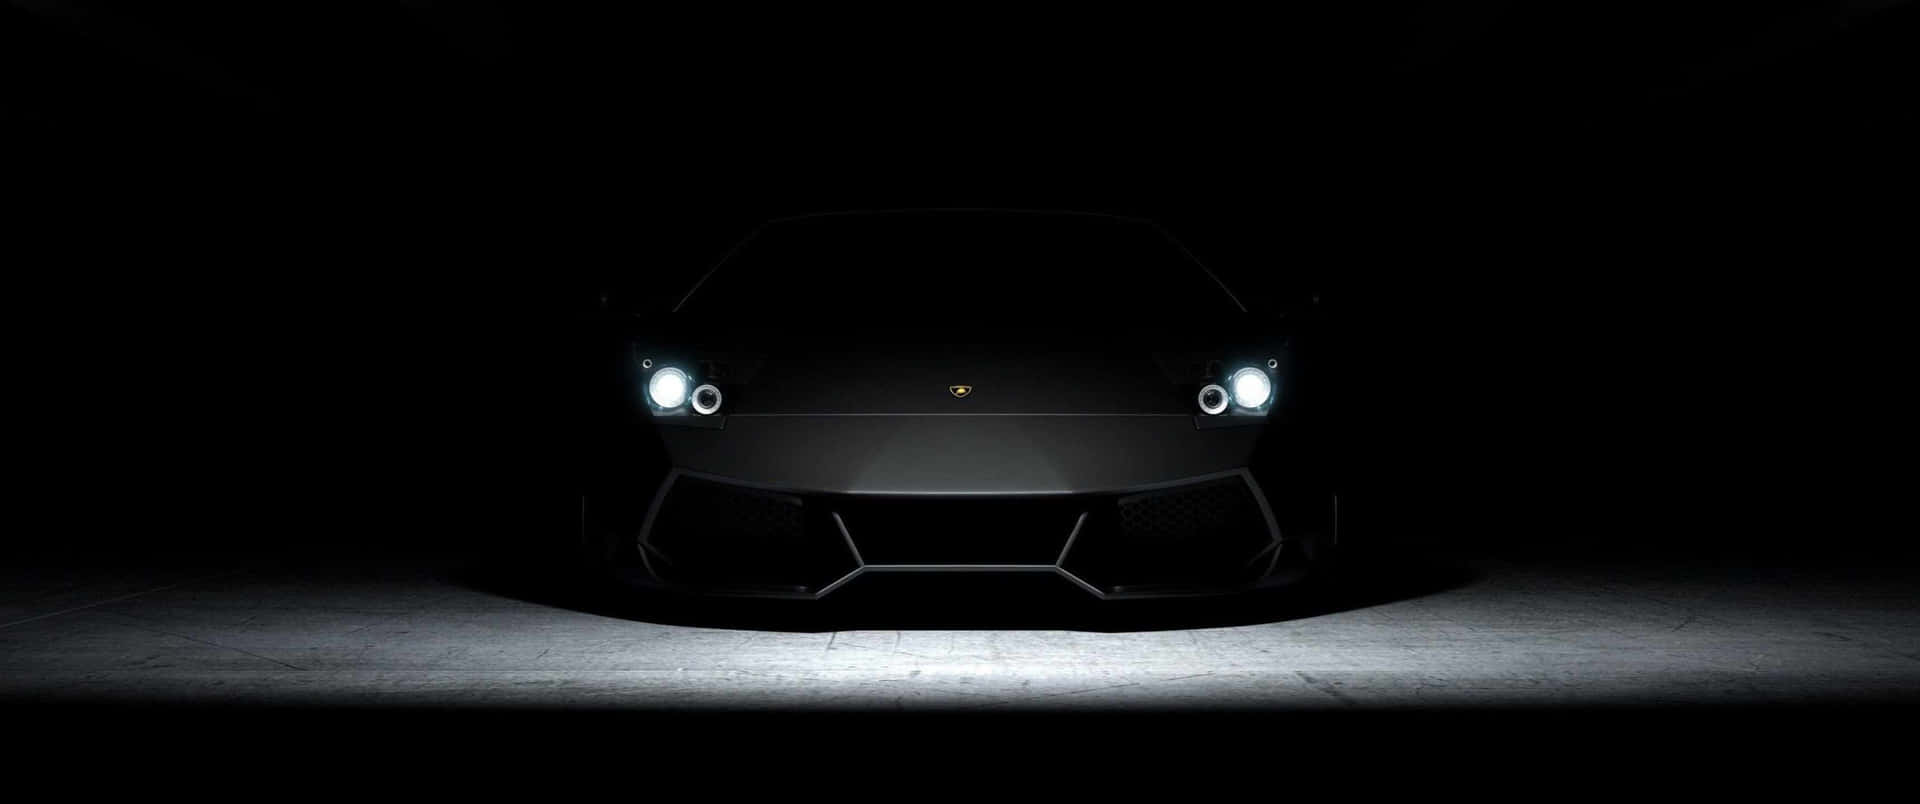 Lamborghinimotorsports - Hastighet Och Stil I Ett.